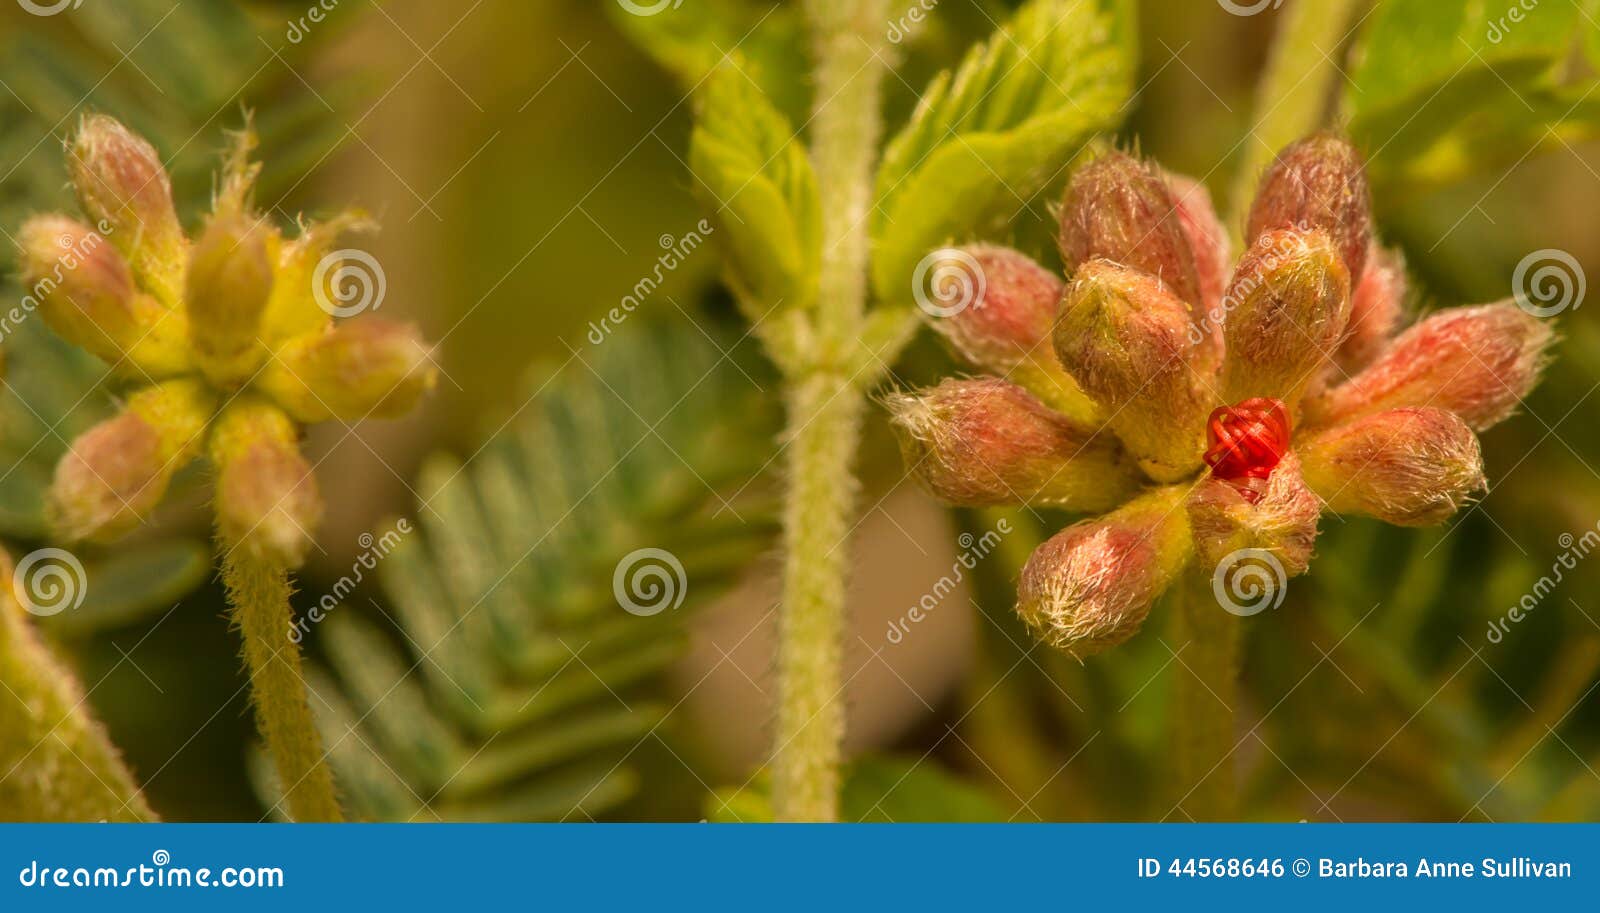 Красный цветок сыпни пера при гениальные красные черенок начиная появиться. Самые предыдущие этапы крошечного красного цветка цветка сыпни пера зацветают